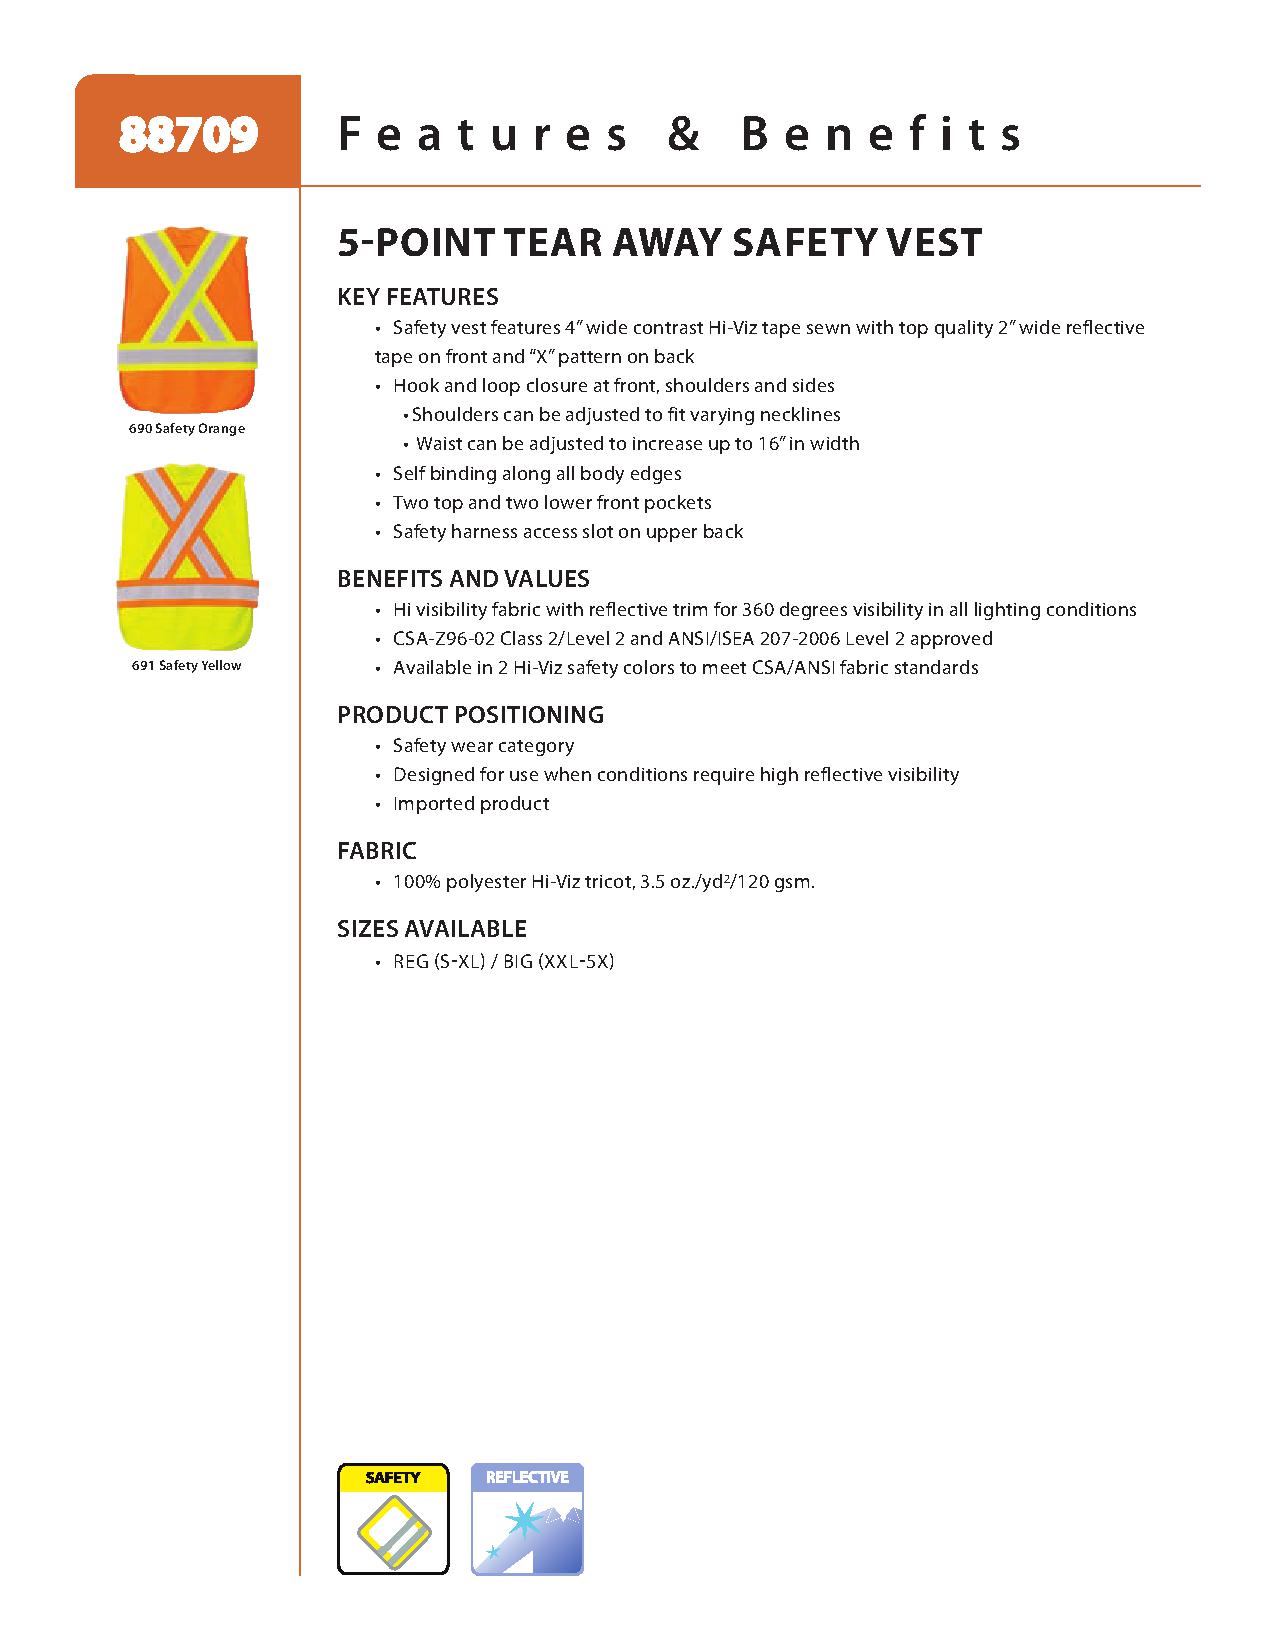 Ash City Lifestyle Vests 88709 - 5-Point Tear Away Safety Vest